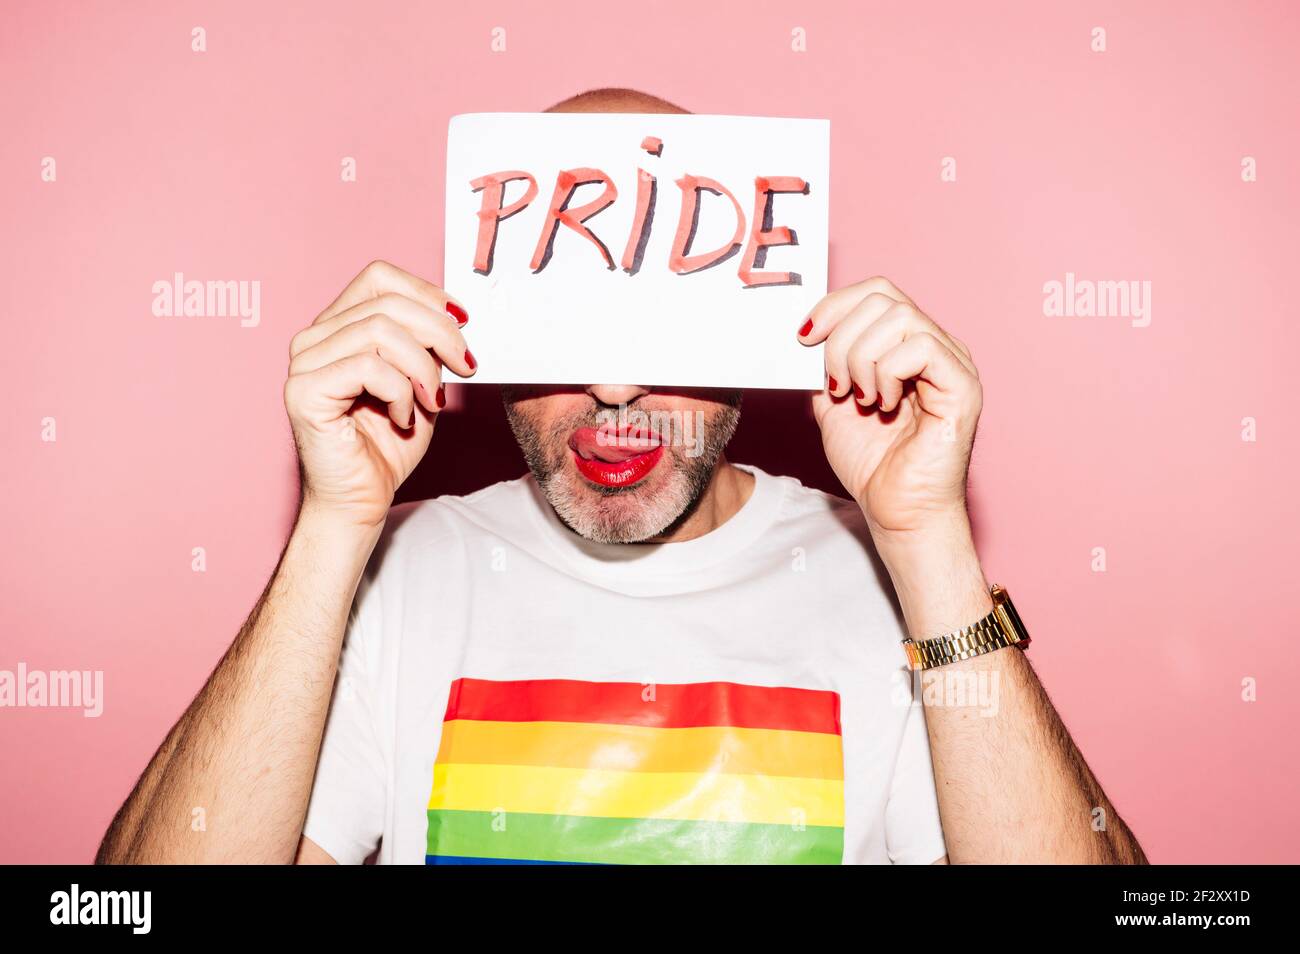 Rebellischer bärtiger homosexueller Mann mit roten Lippen und Maniküre machen Grimace mit Zunge heraus beim Zeigen und Bedecken Gesicht mit Papier mit Pride-Text Stockfoto